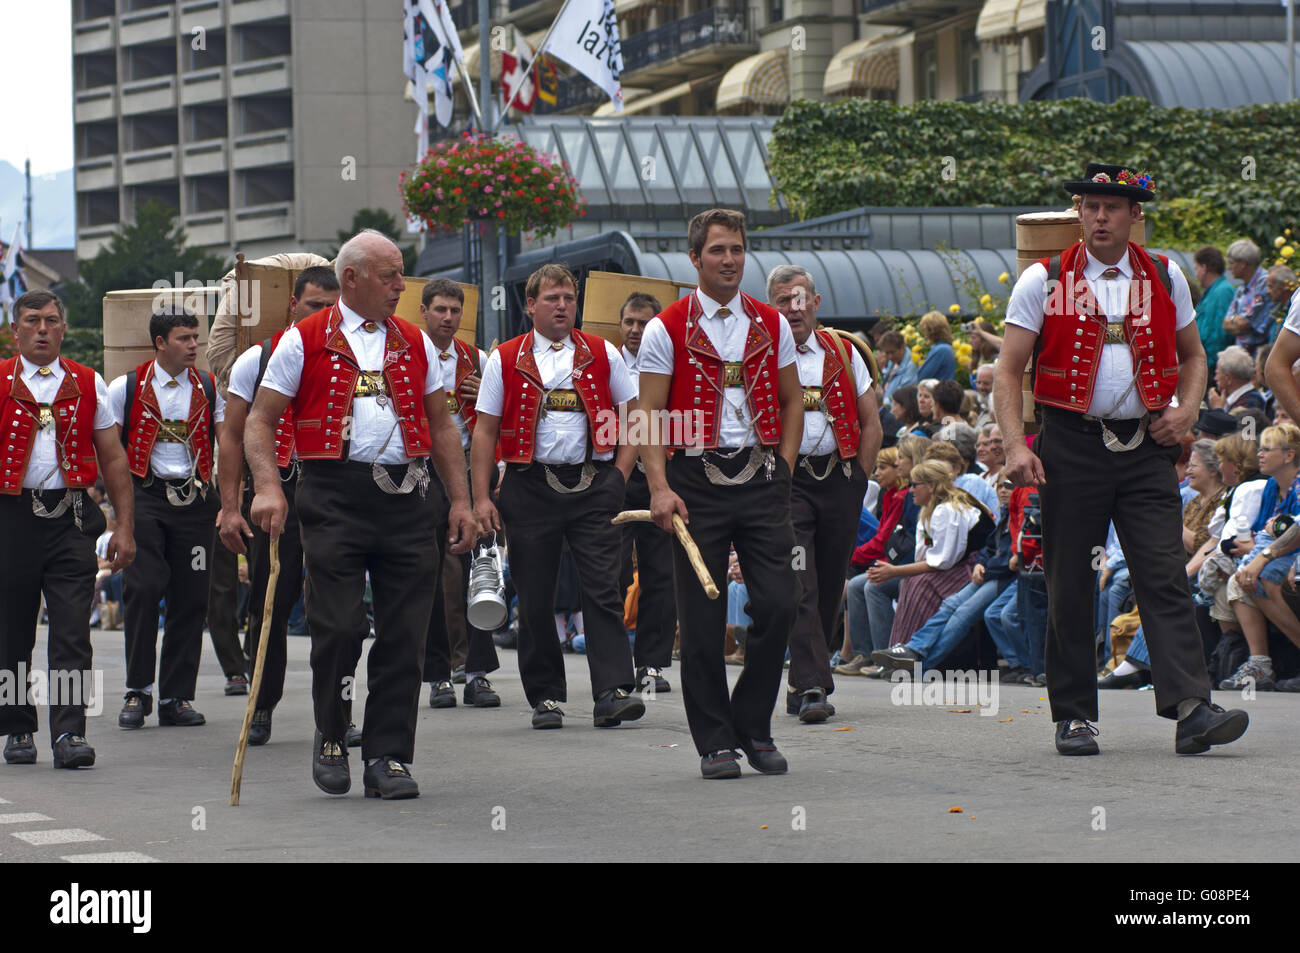 Grupo de hombres en trajes tradicionales suizos Foto de stock